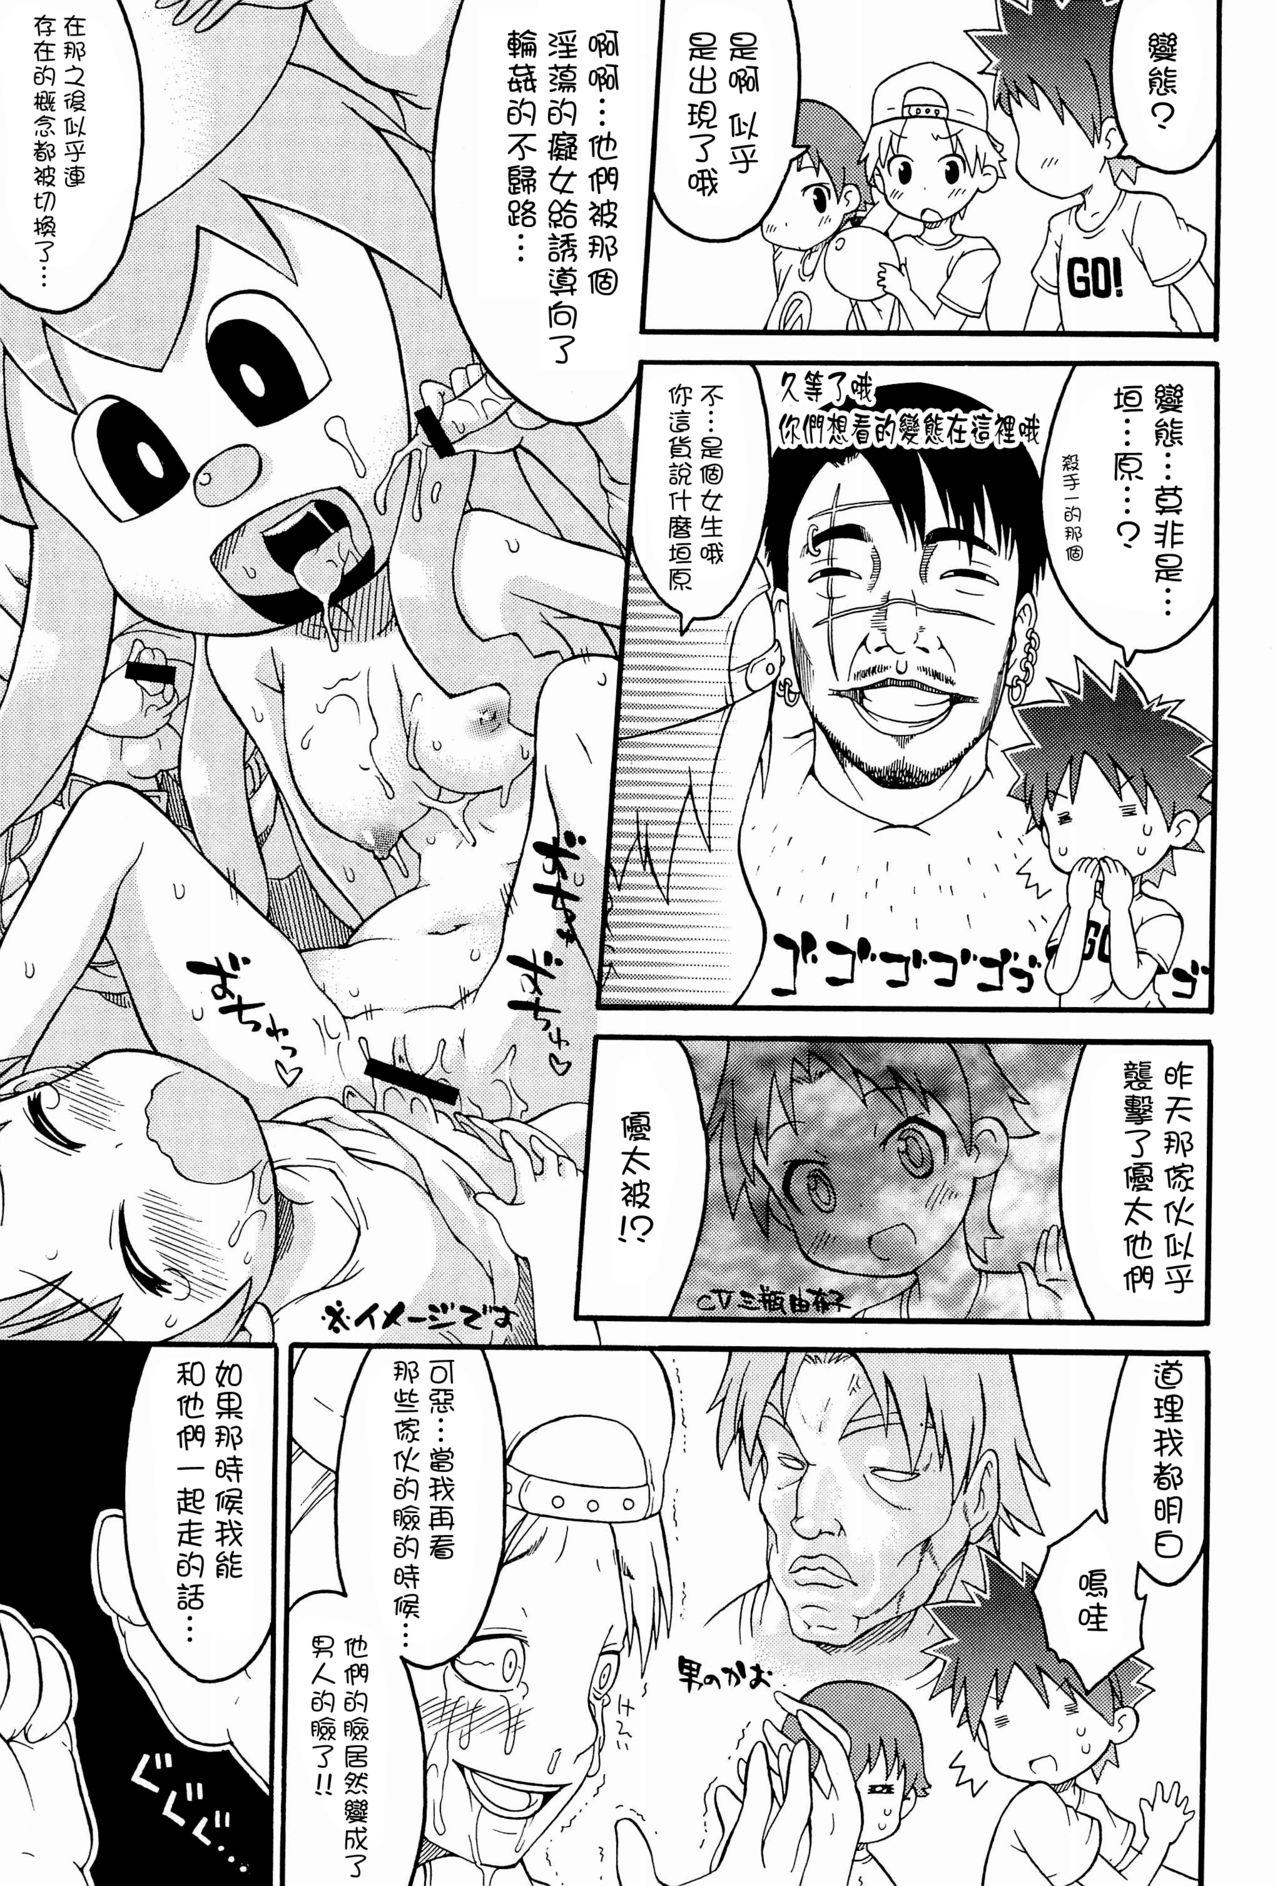 Cdmx Shokushu Karamaru Ika no Wakusei - Shinryaku ika musume | invasion squid girl Club - Page 5